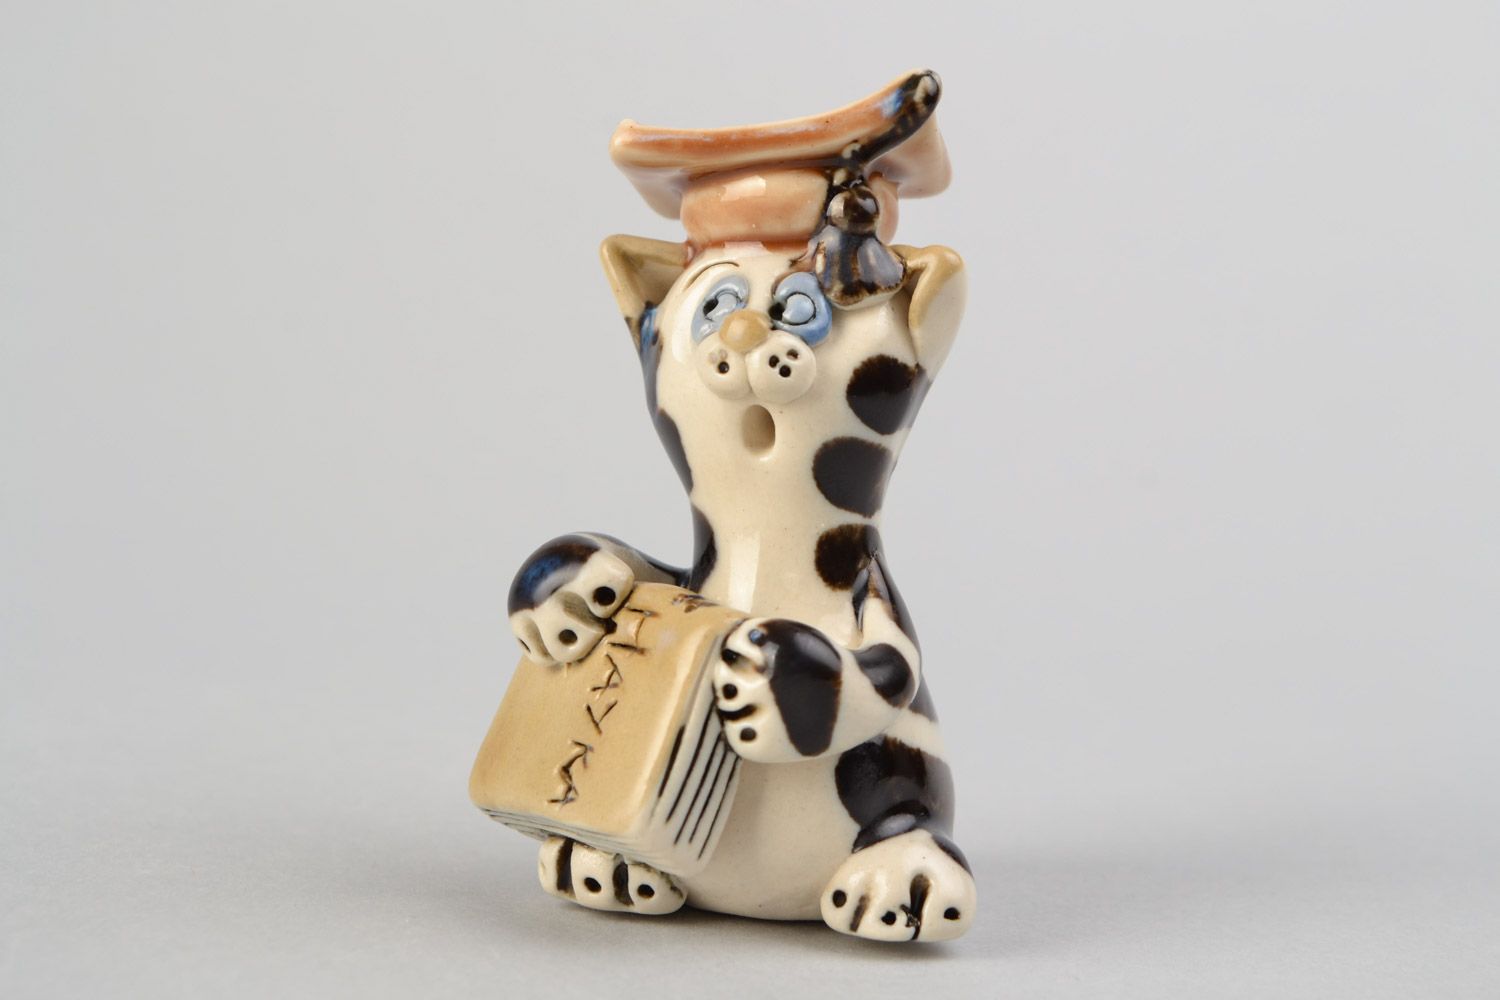 Авторская расписанная глазурью глиняная фигурка кота ученого ручной работы фото 1